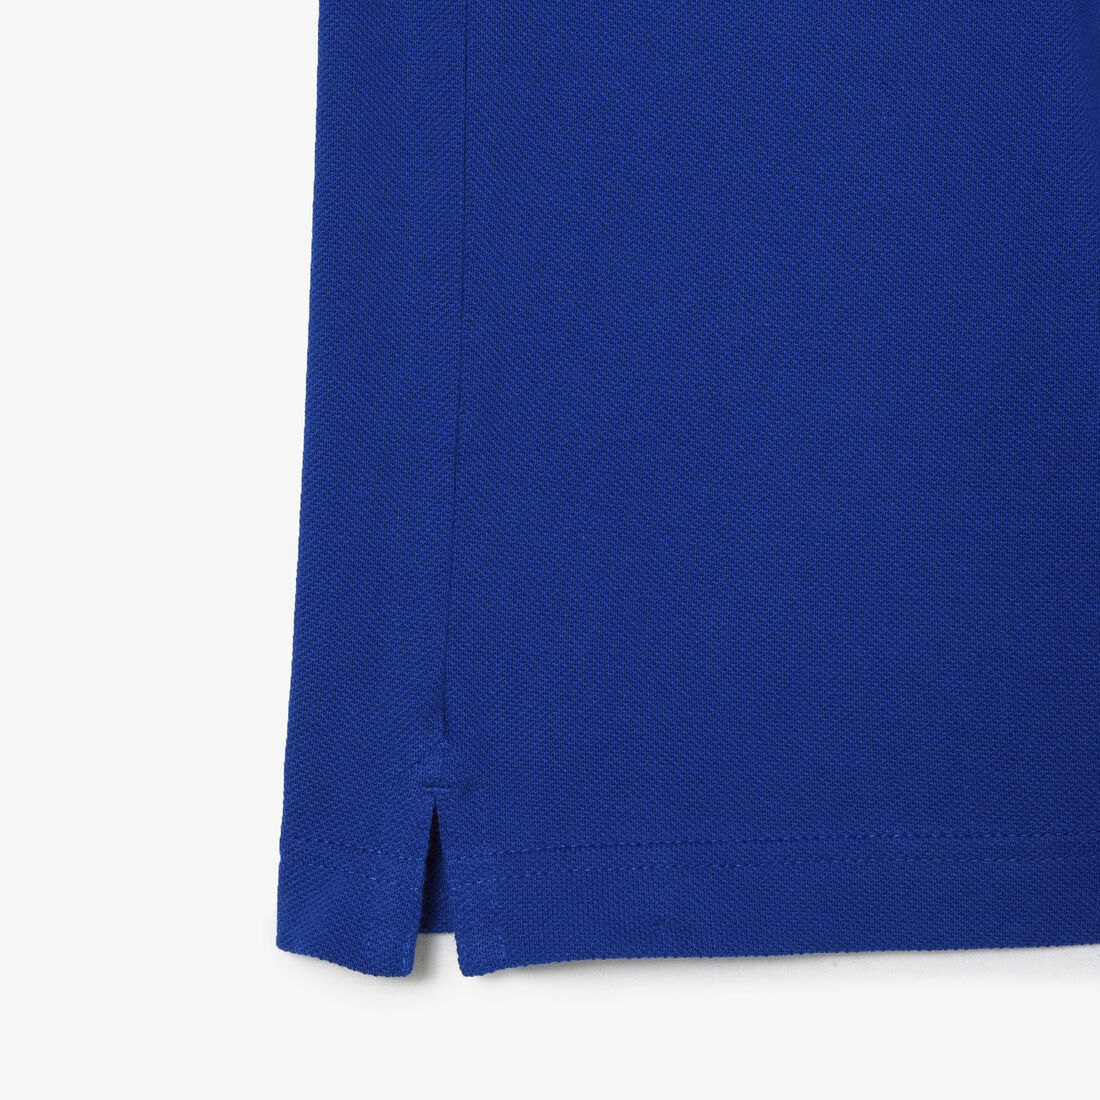 Lacoste Slim Fit In Petit Piqué Polo Shirts Herren Blau | LPQB-91385